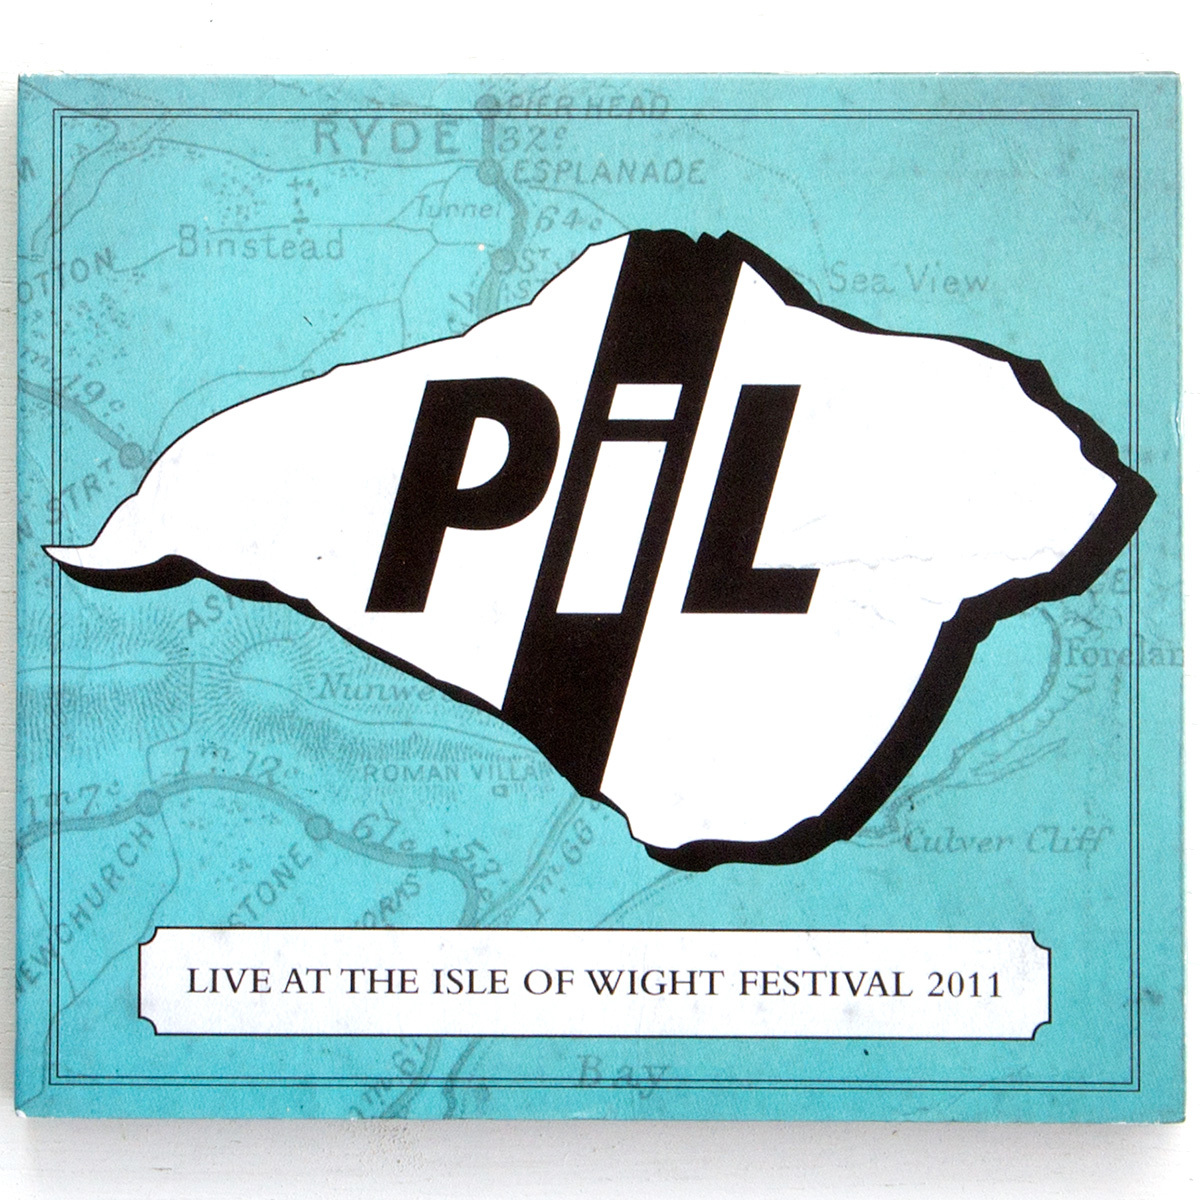 即決 Public Image Ltd. Live At The Isle Of Festival John Pistols Wight 大人気! 2011 Lydon 188円でCD4枚まで発送可能 Sex 通常便なら送料無料